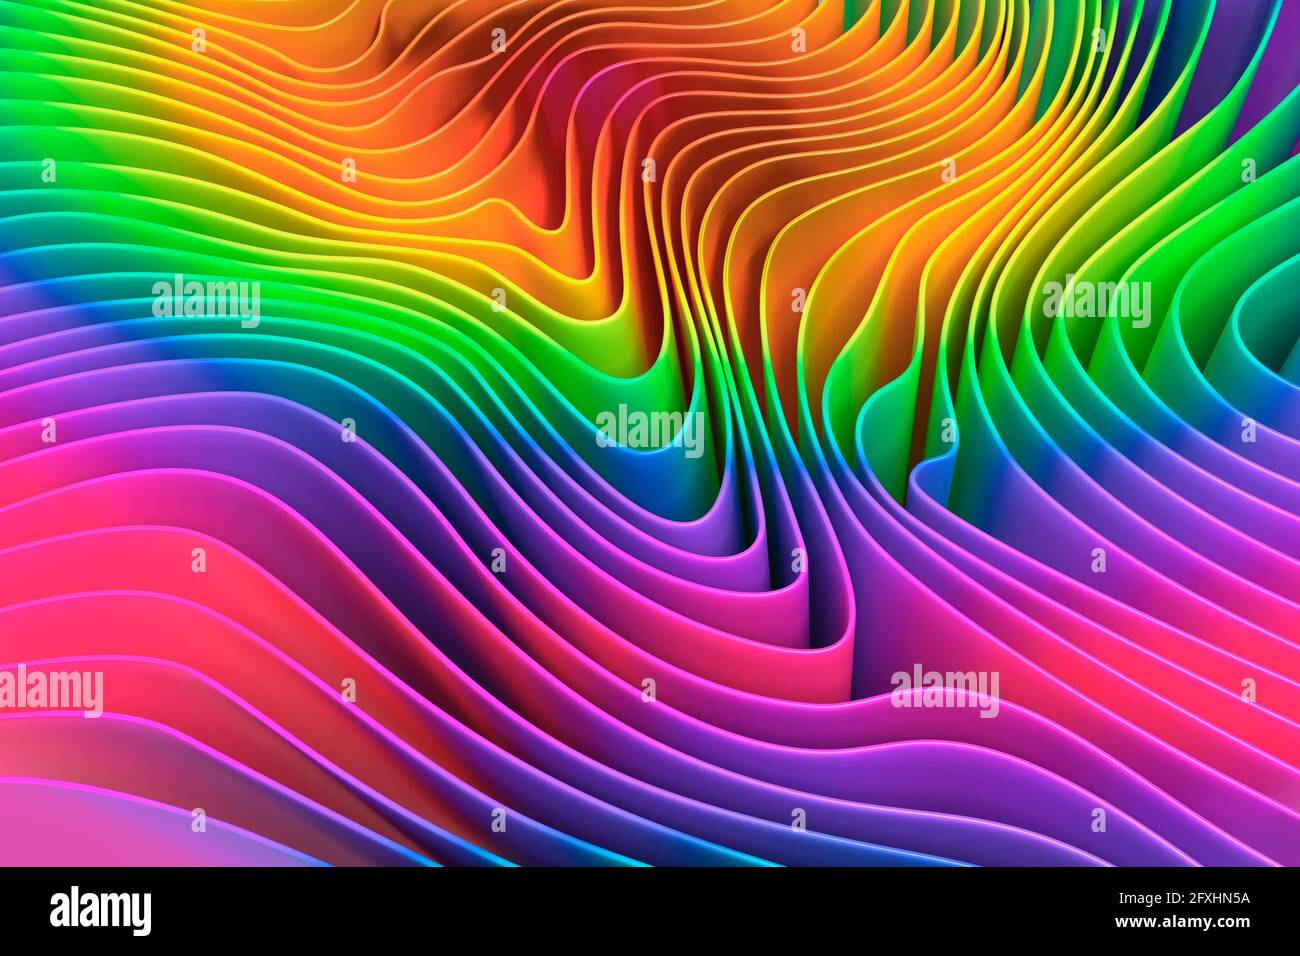 Image générée numériquement, motif d'ondulation multicolore de l'arc-en-ciel Banque D'Images